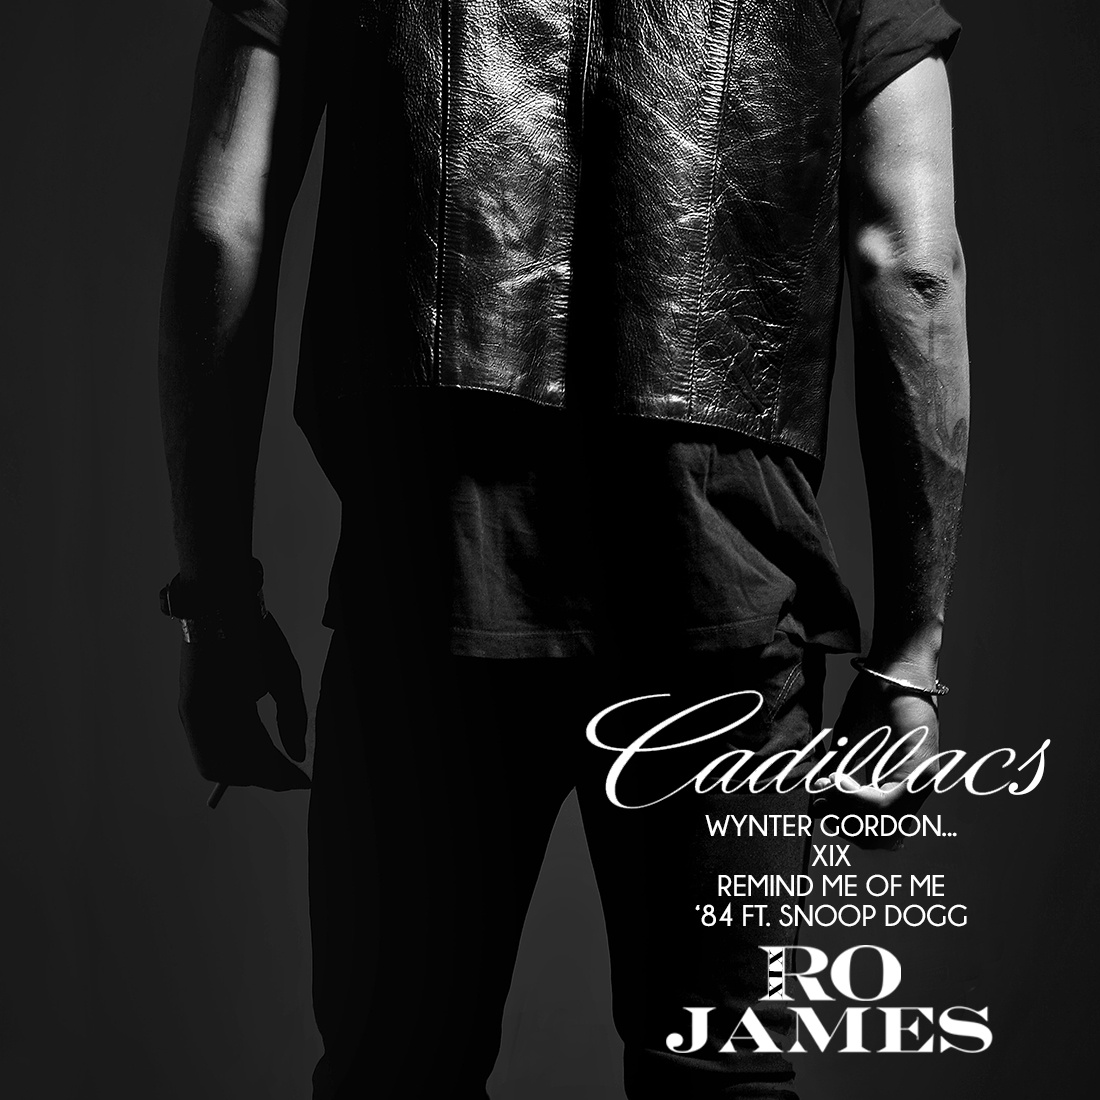 New Music: Ro James "Cadillacs" (EP)